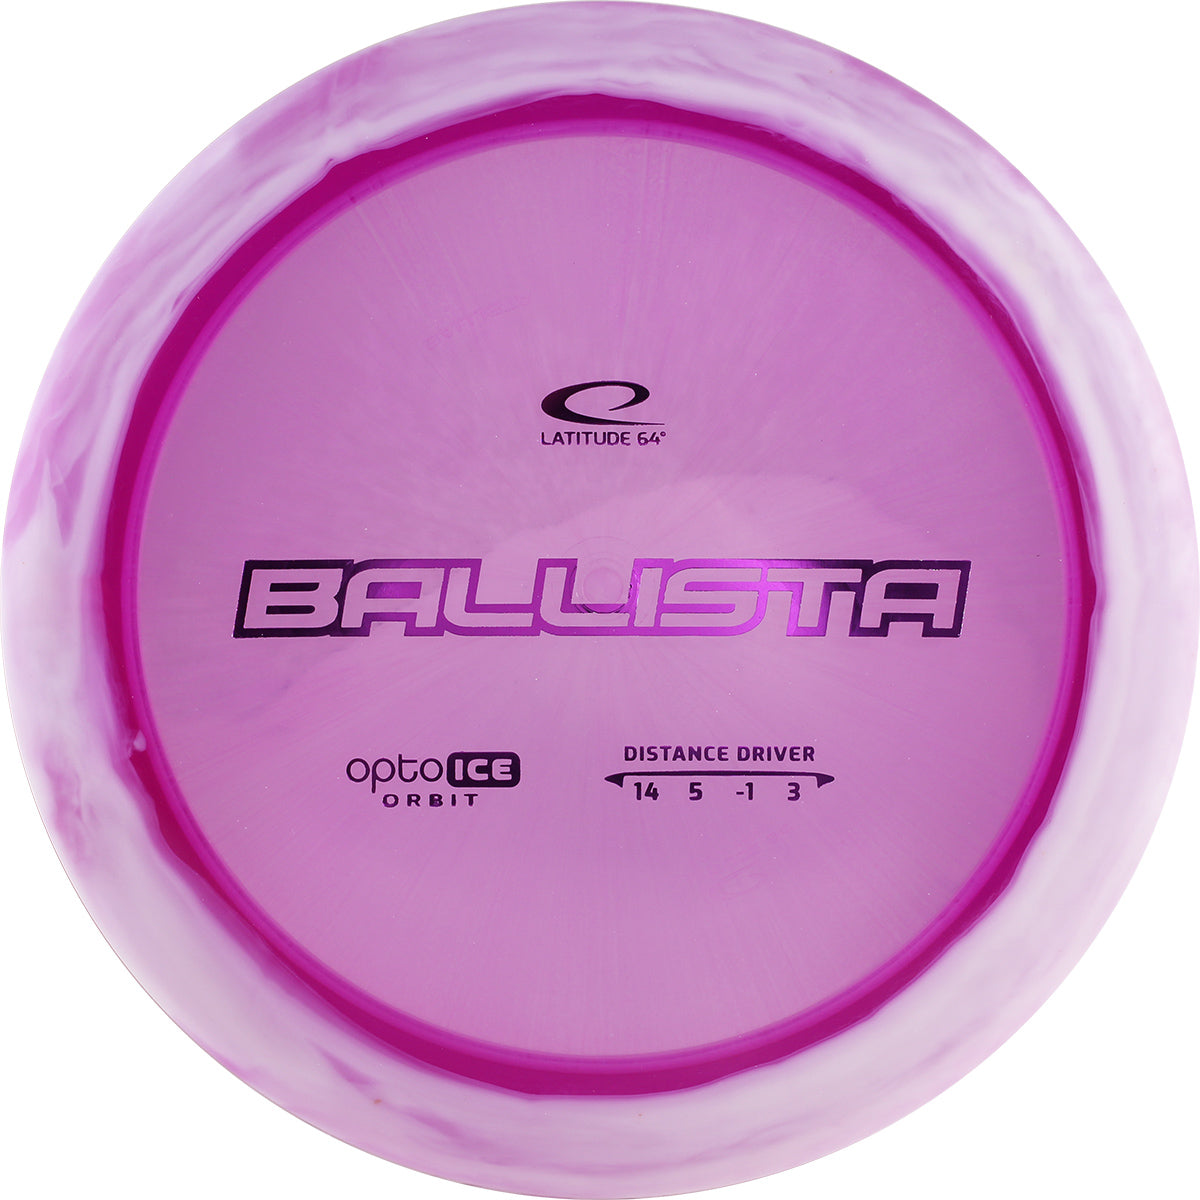 Latitude 64 Ballista - Ice Orbit